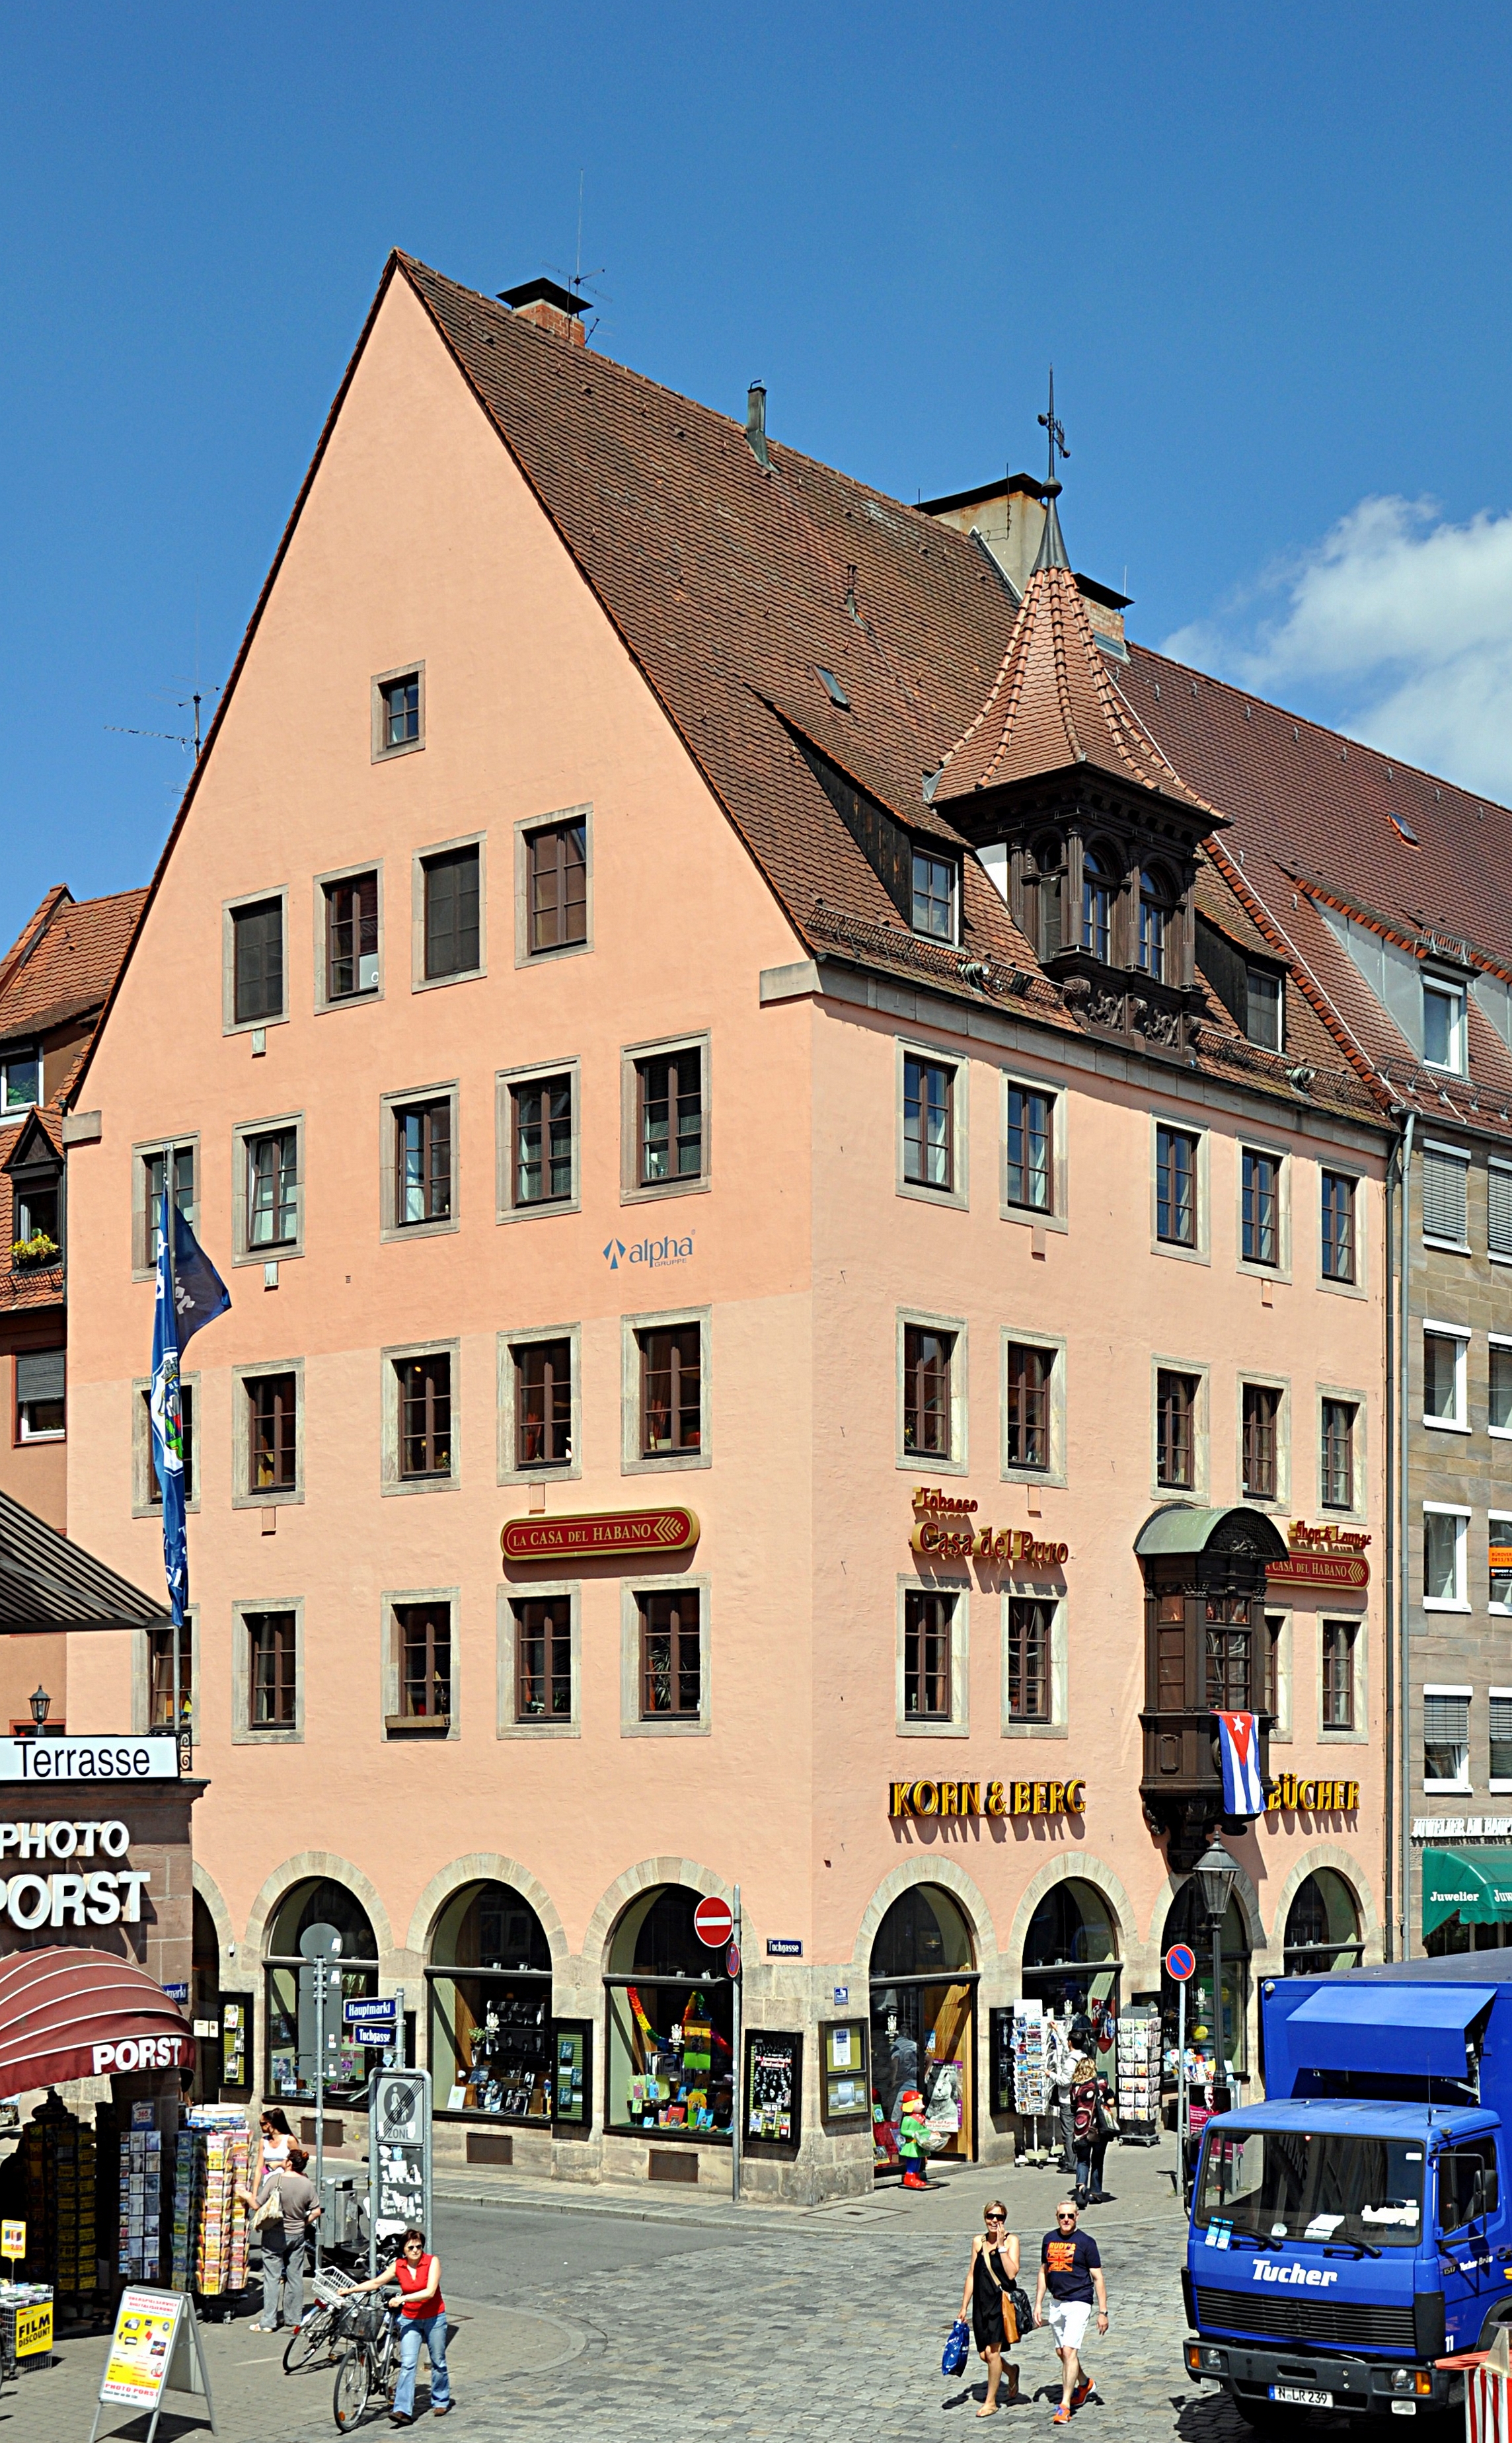 Bookshop 'Korn und Berg' in Nuremberg